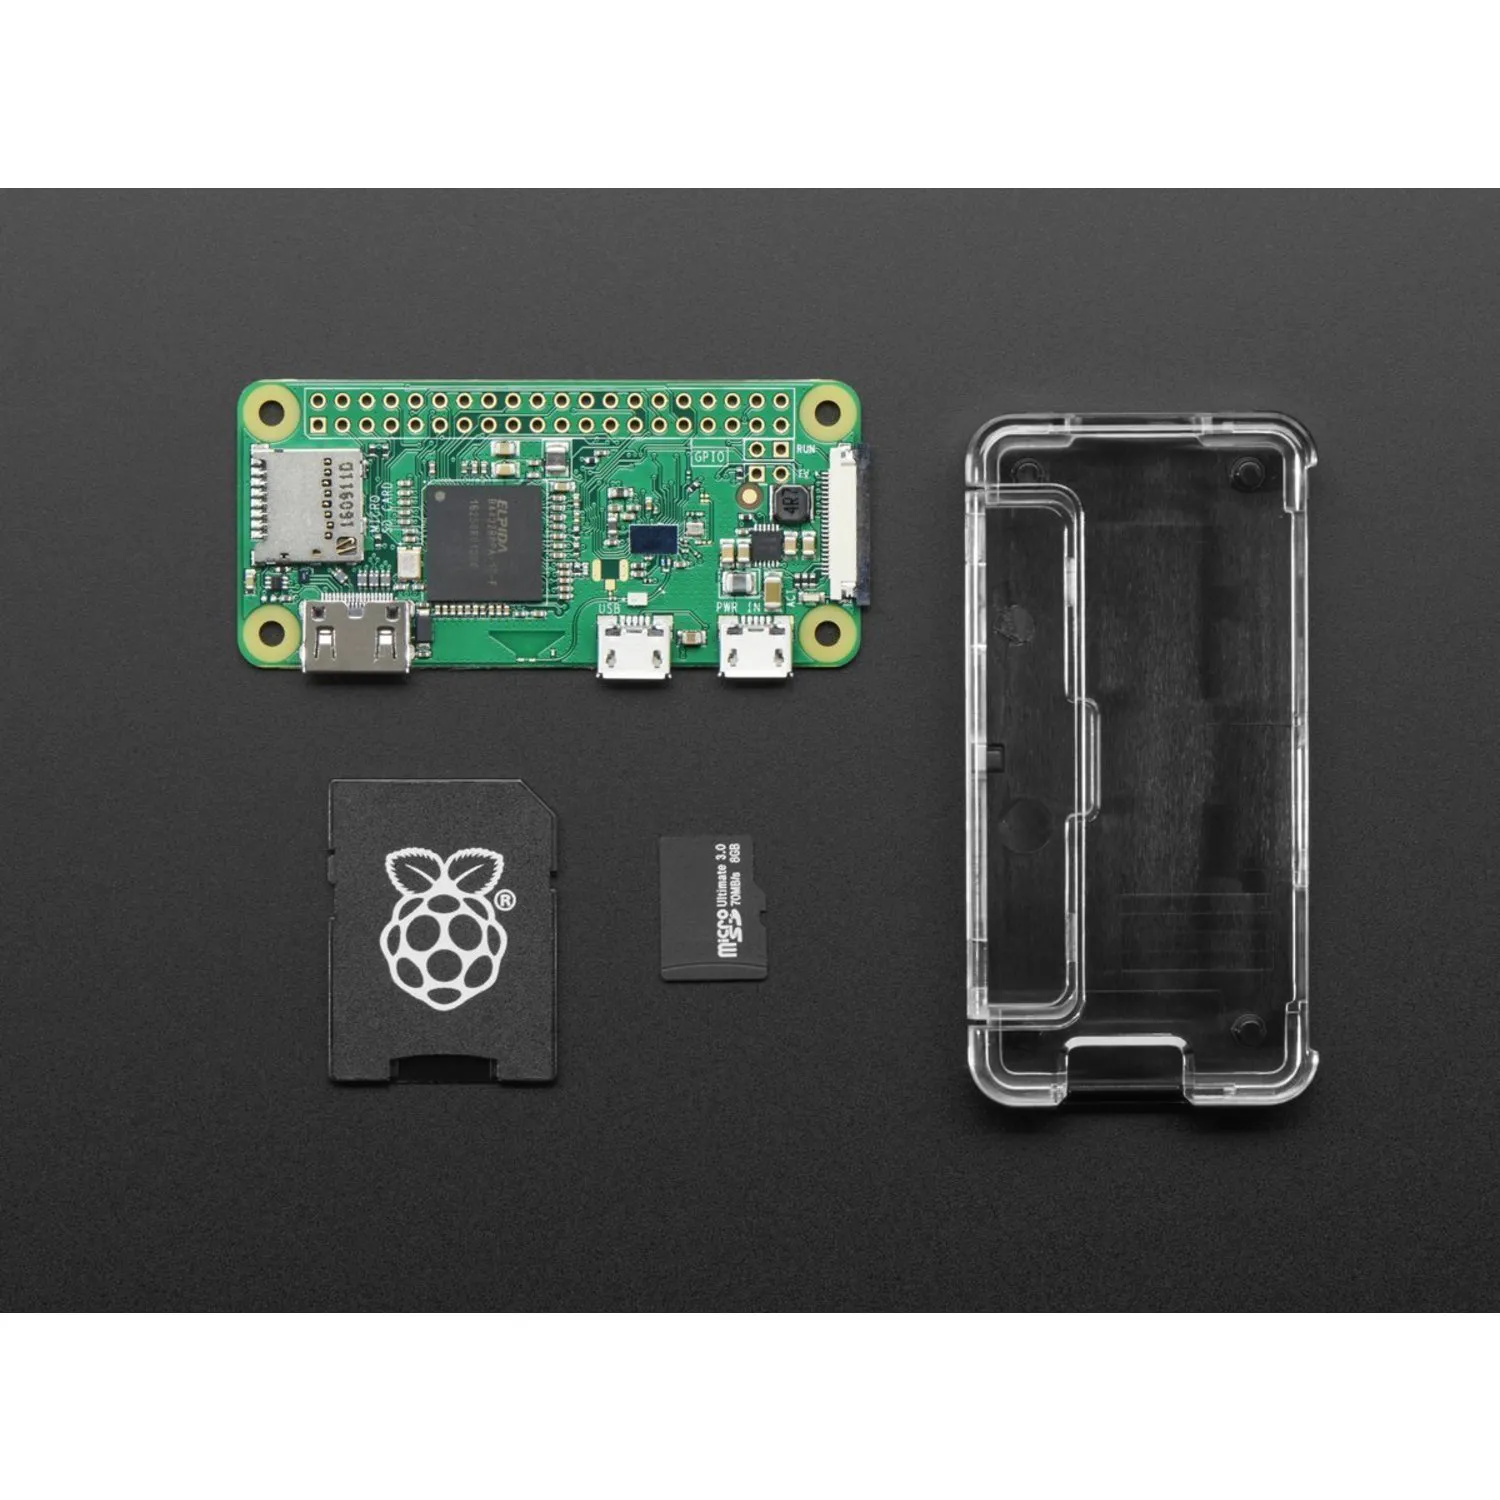 Photo of Raspberry Pi Zero W Basic Pack - Includes Pi Zero W